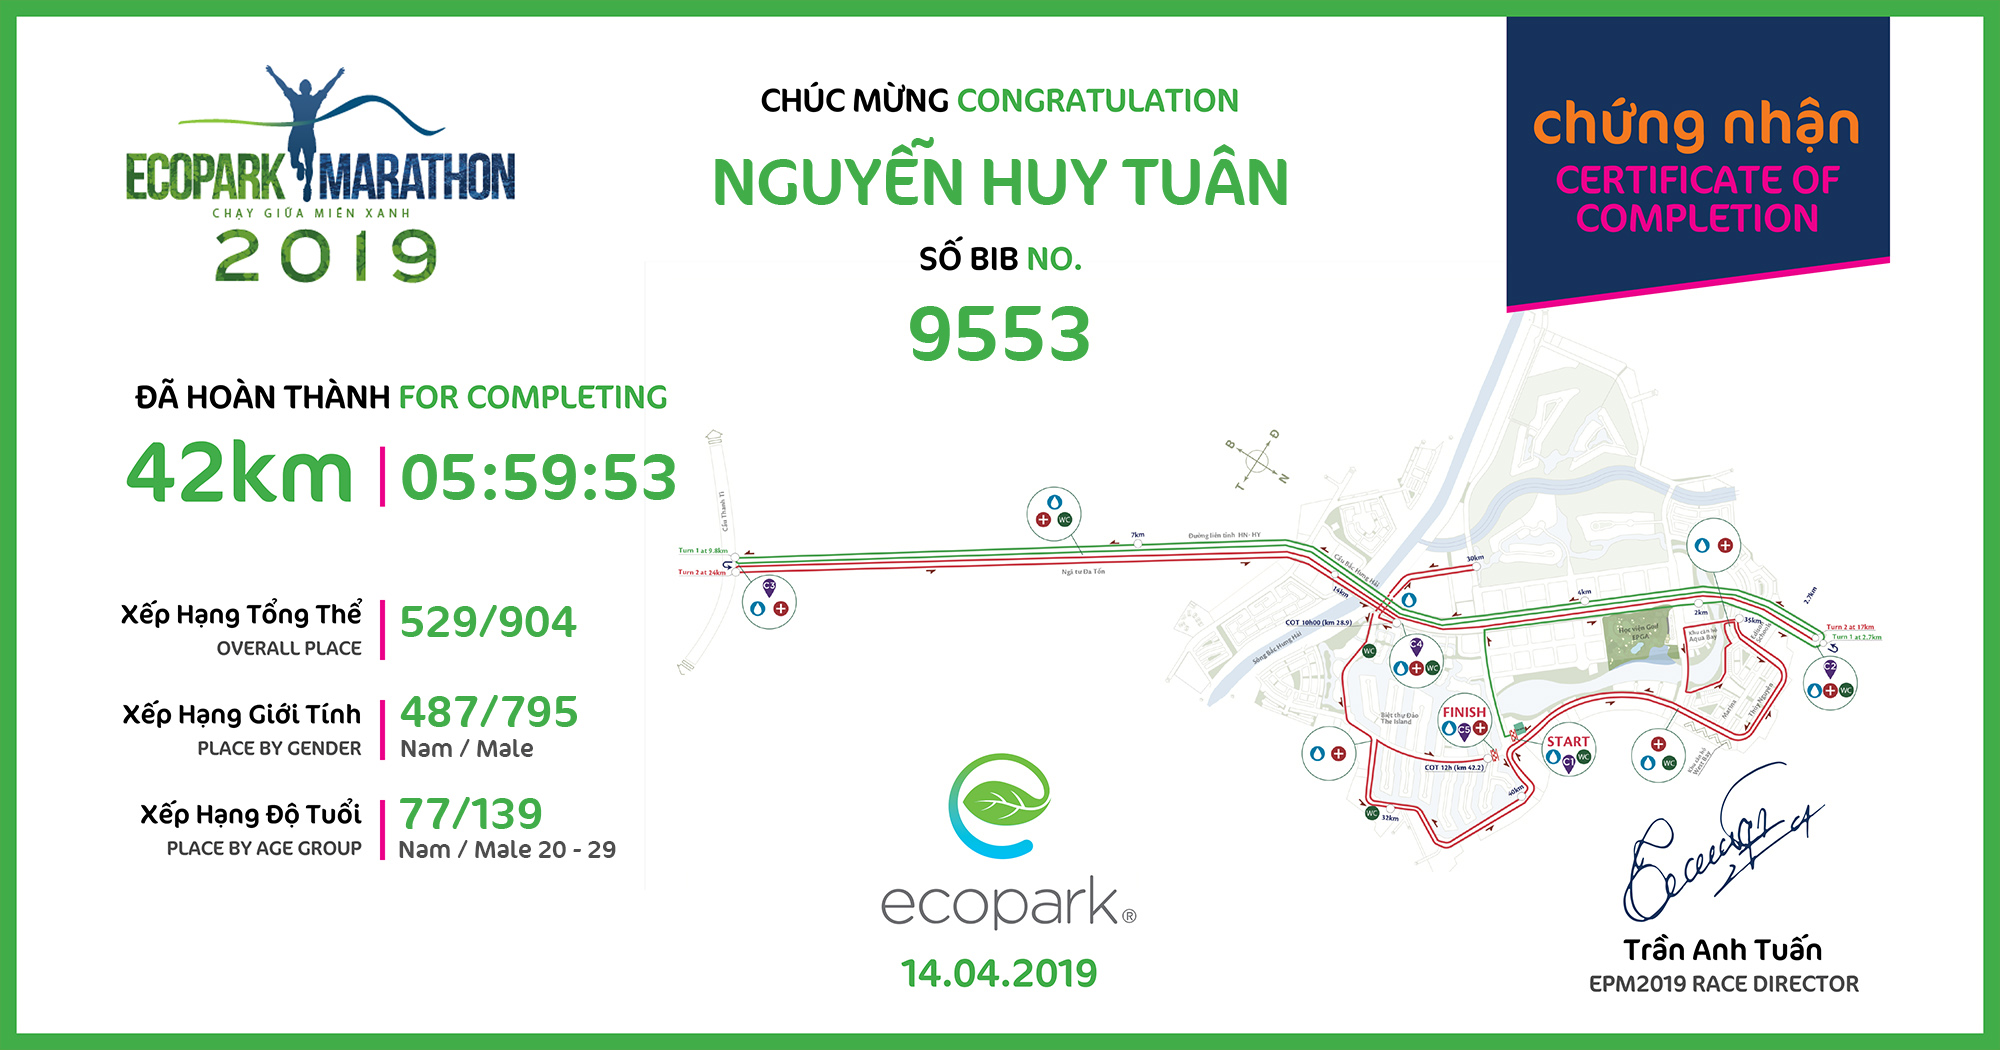 9553 - Nguyễn Huy Tuân